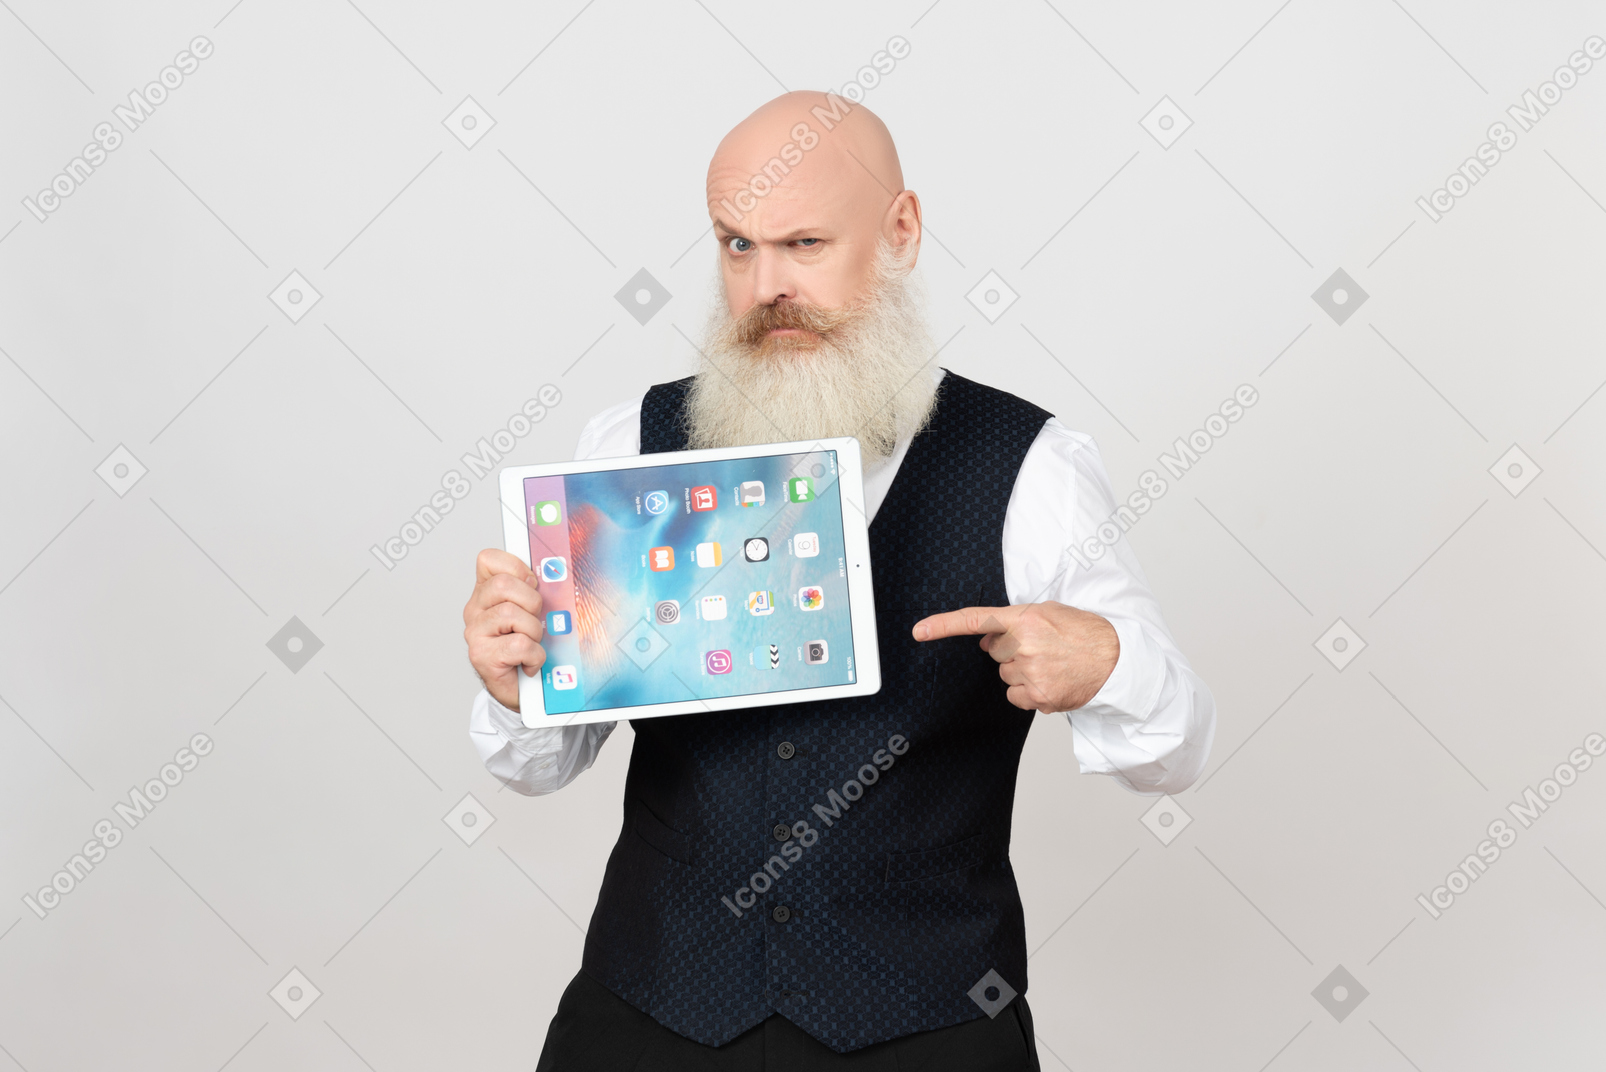 Hombre de edad sosteniendo ipad y apuntando sobre él